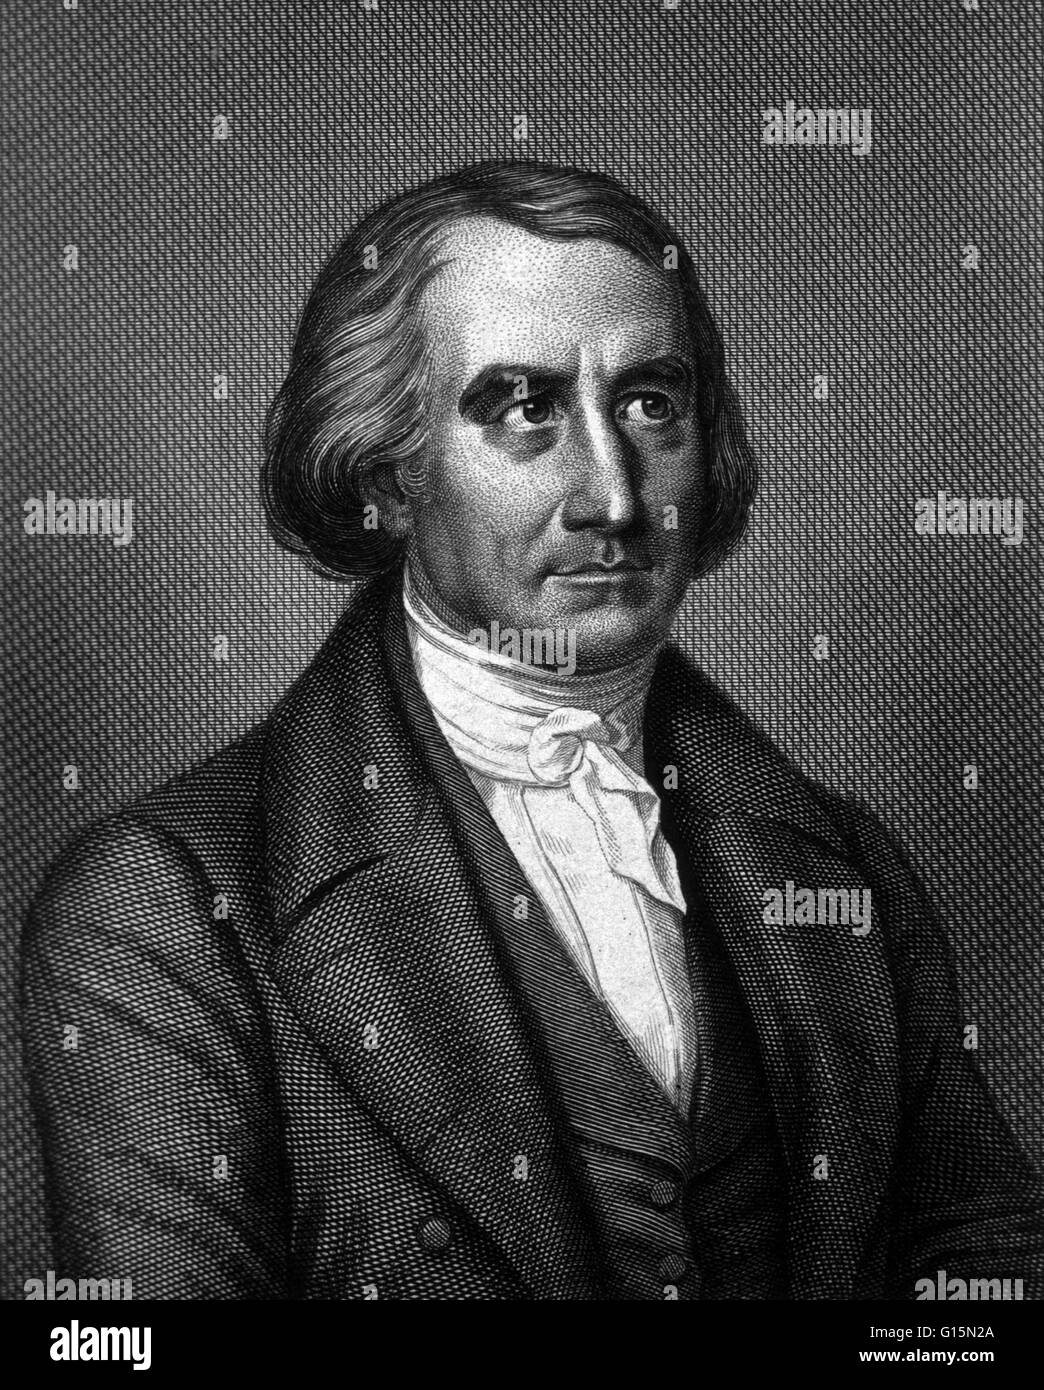 Francois Jean Dominique Arago (Febbraio 26, 1786 - 2 ottobre 1853), era un matematico francese, fisico e astronomo politico. Egli è stato eletto membro dell'Accademia francese delle scienze, all'età di 23, e dato una posizione come uno dei astronom Foto Stock